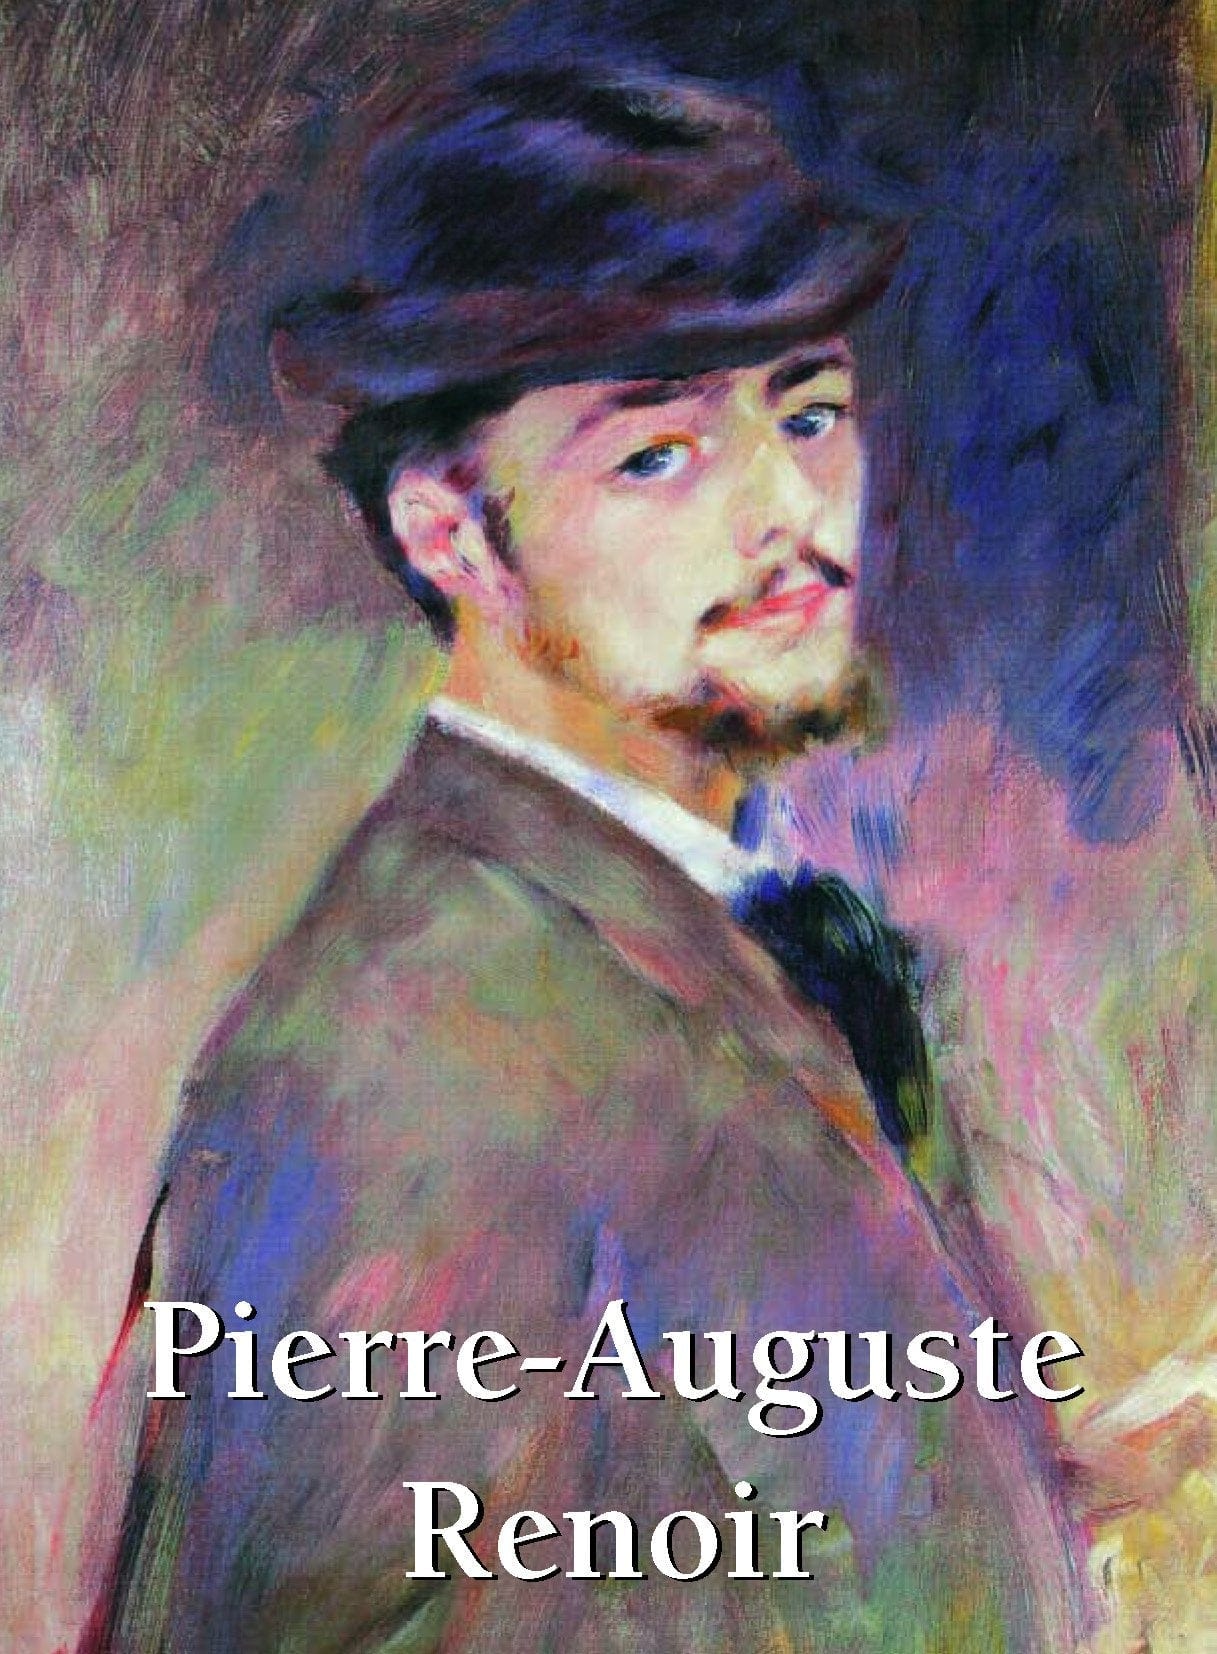 Pierre Auguste Renoir: Art Gallery